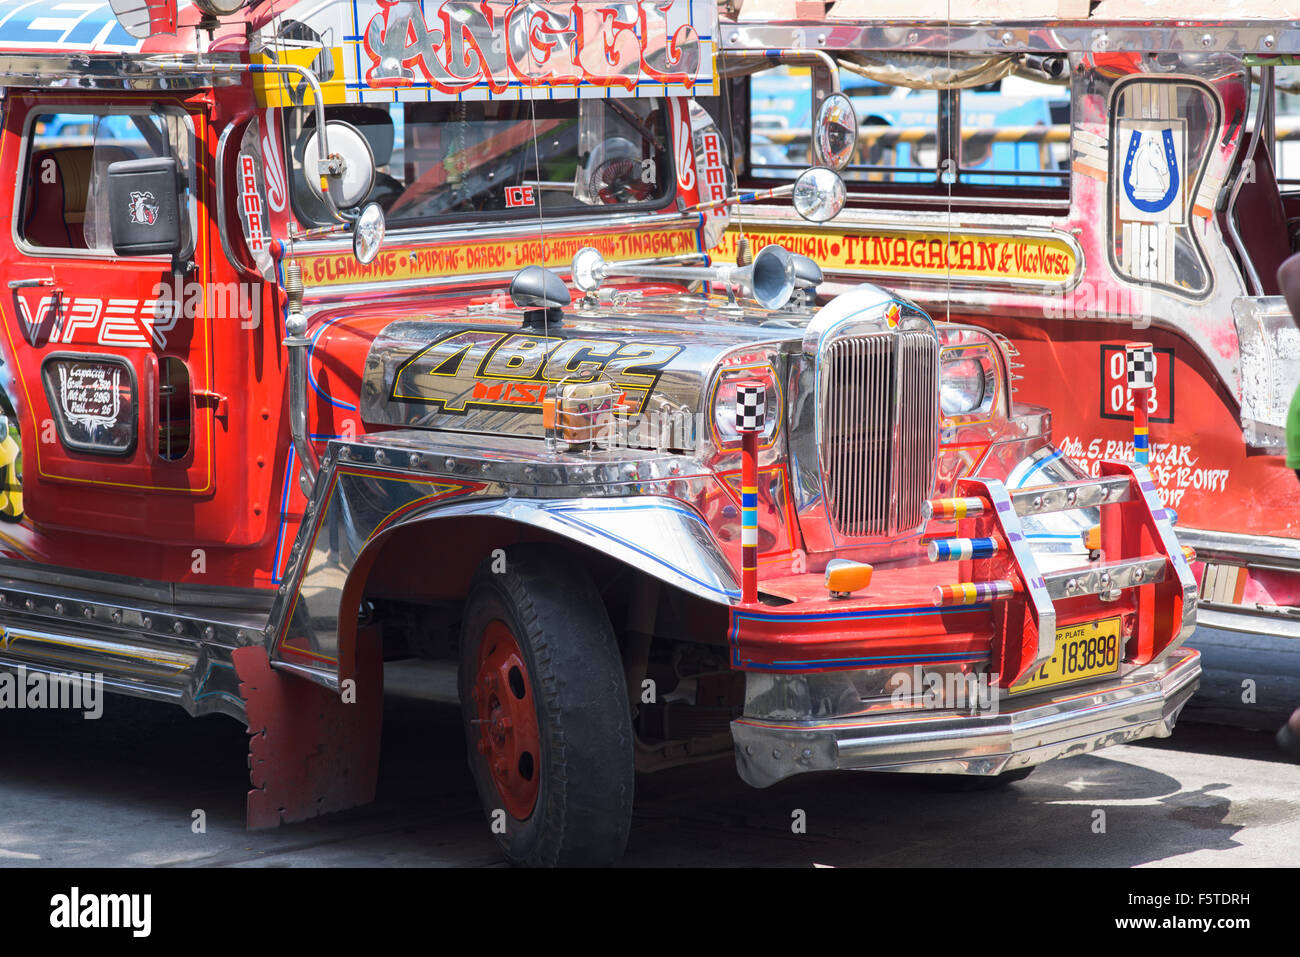 Détails de deux jeepneys philippins, le célèbre véhicule de transport en commun, à General Santos City aux Philippines. Banque D'Images